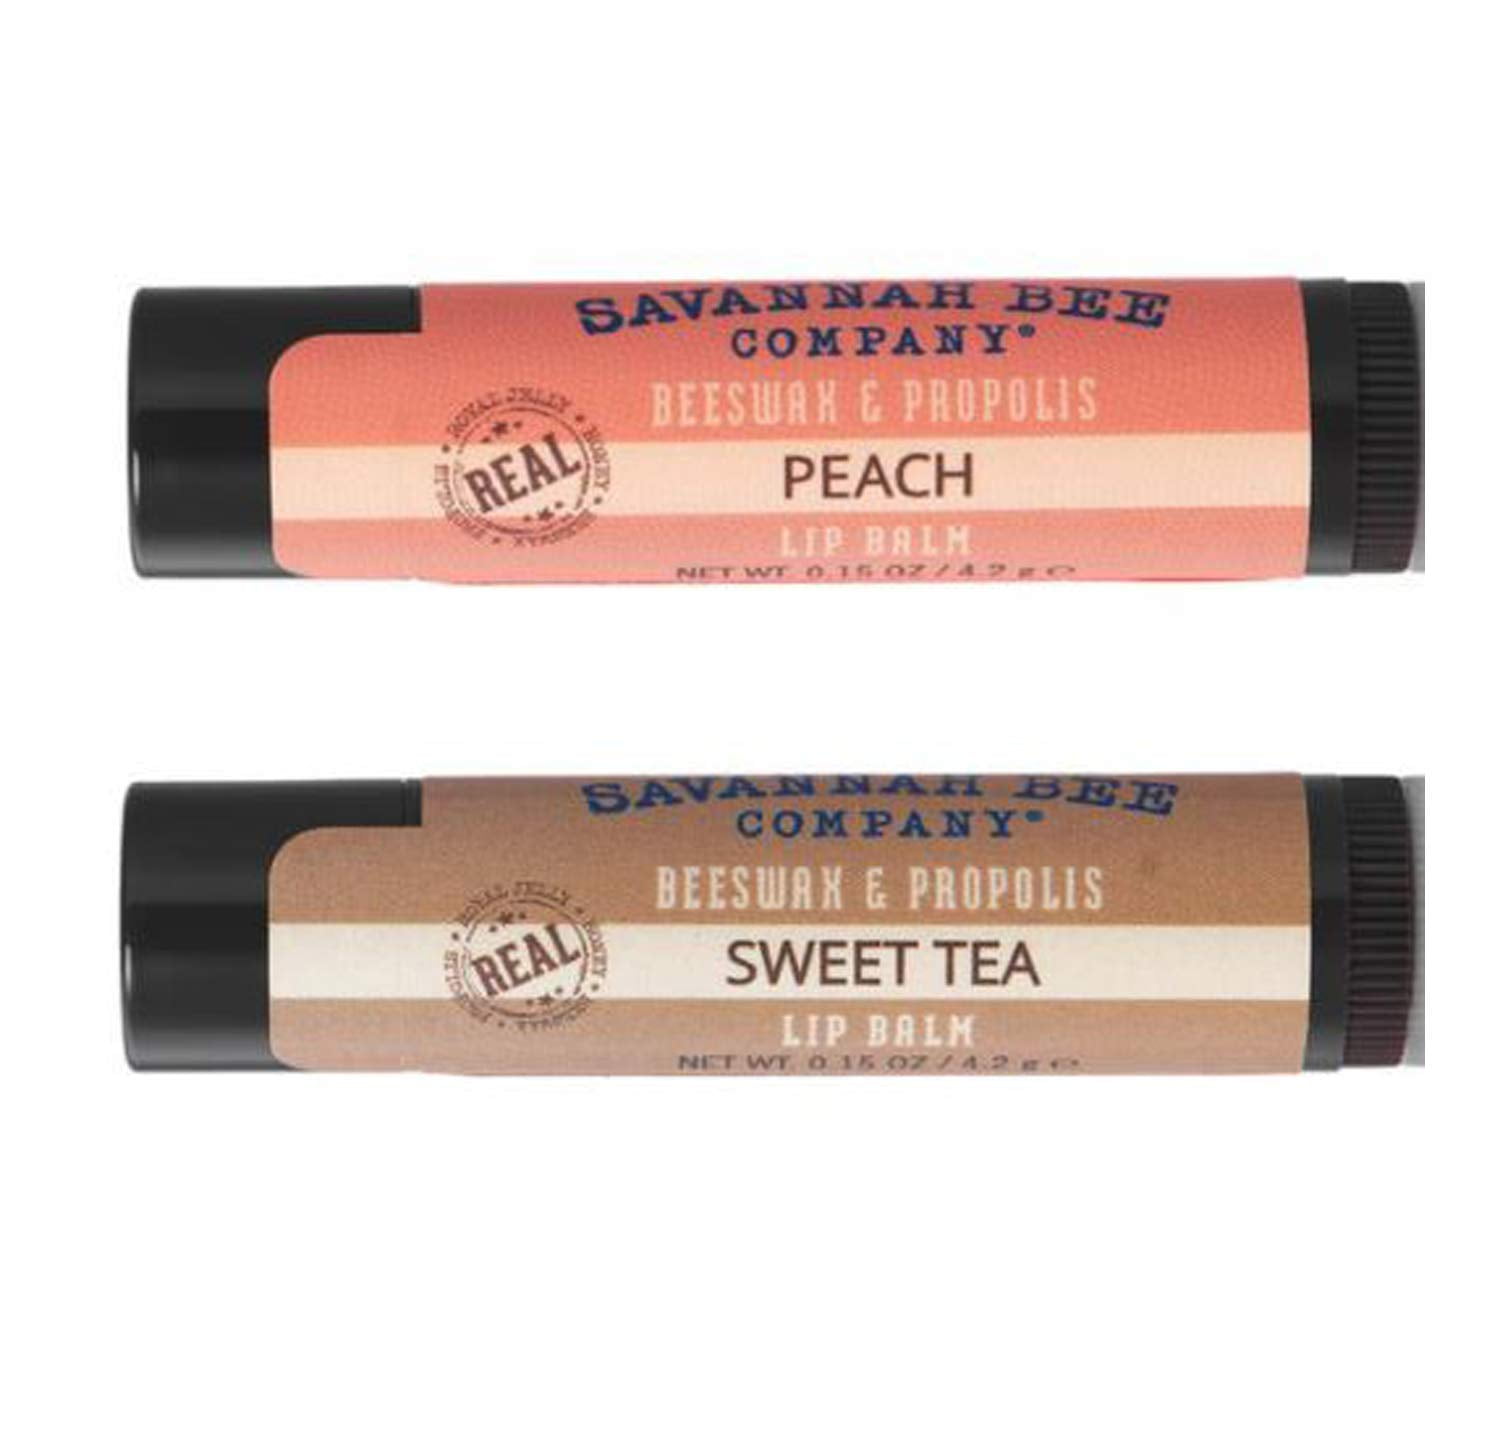 Pure Beeswax Lip Balm – The Sweet Bee Company